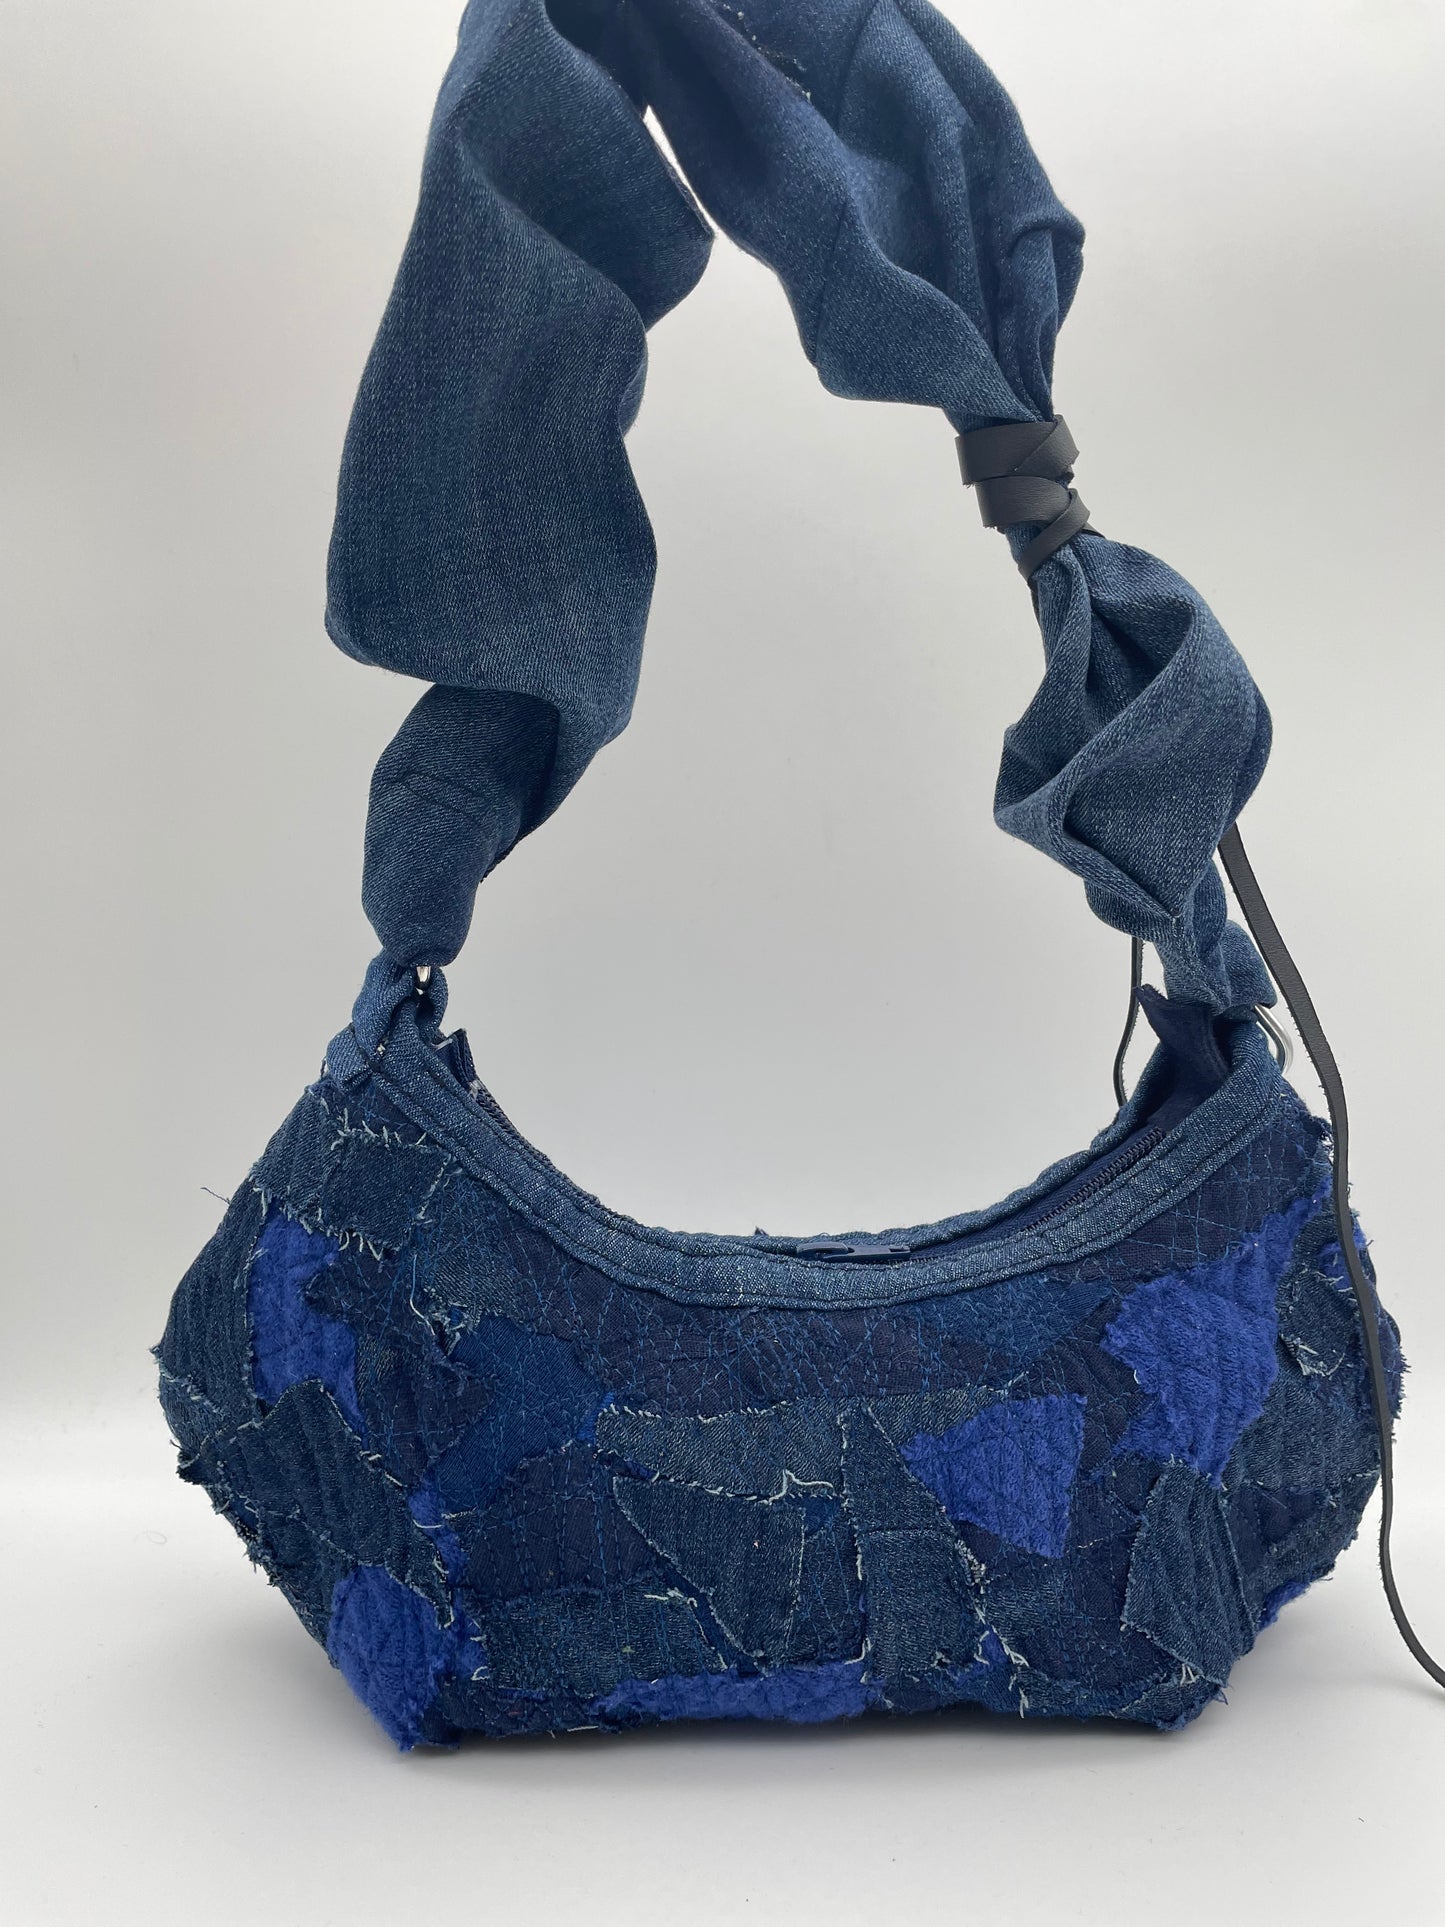 upcycled blue denim bag scrunchy bag zerowaste leather waste crazy sewed handbag